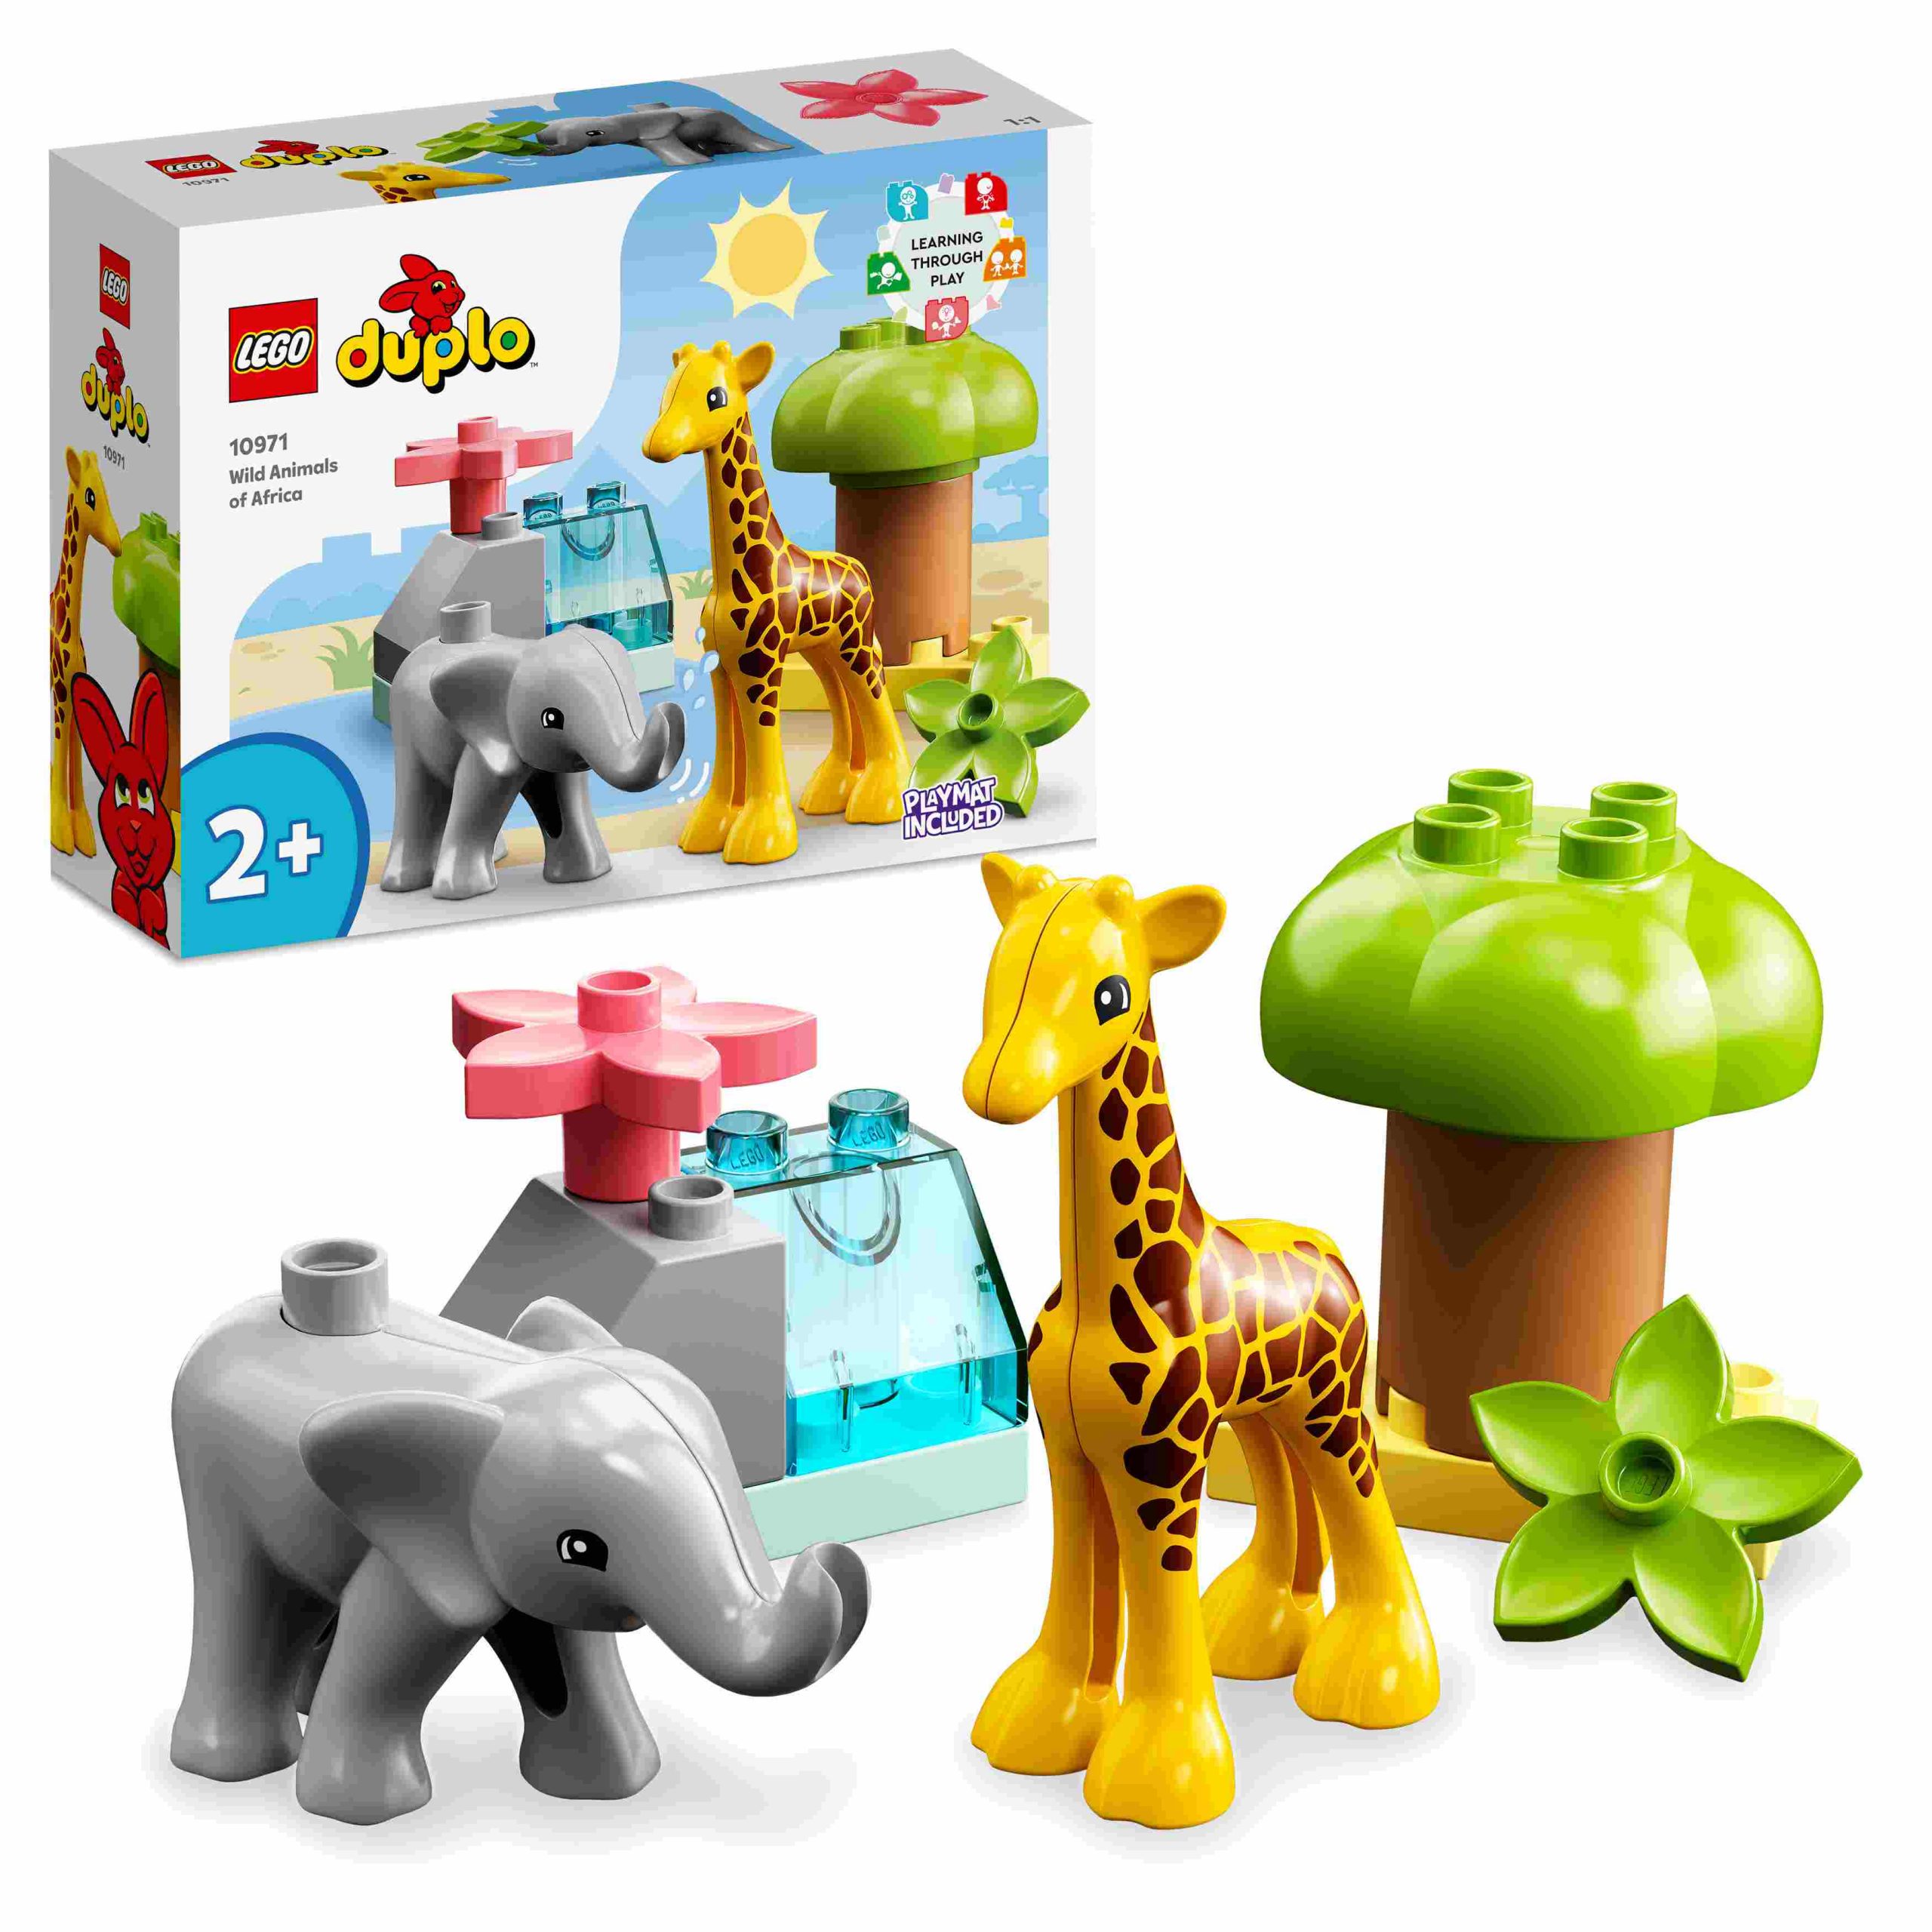 Lego duplo 10971 animali dell’africa, giochi educativi per bambini dai 2 anni con elefante giocattolo e tappetino da gioco - LEGO DUPLO, Lego